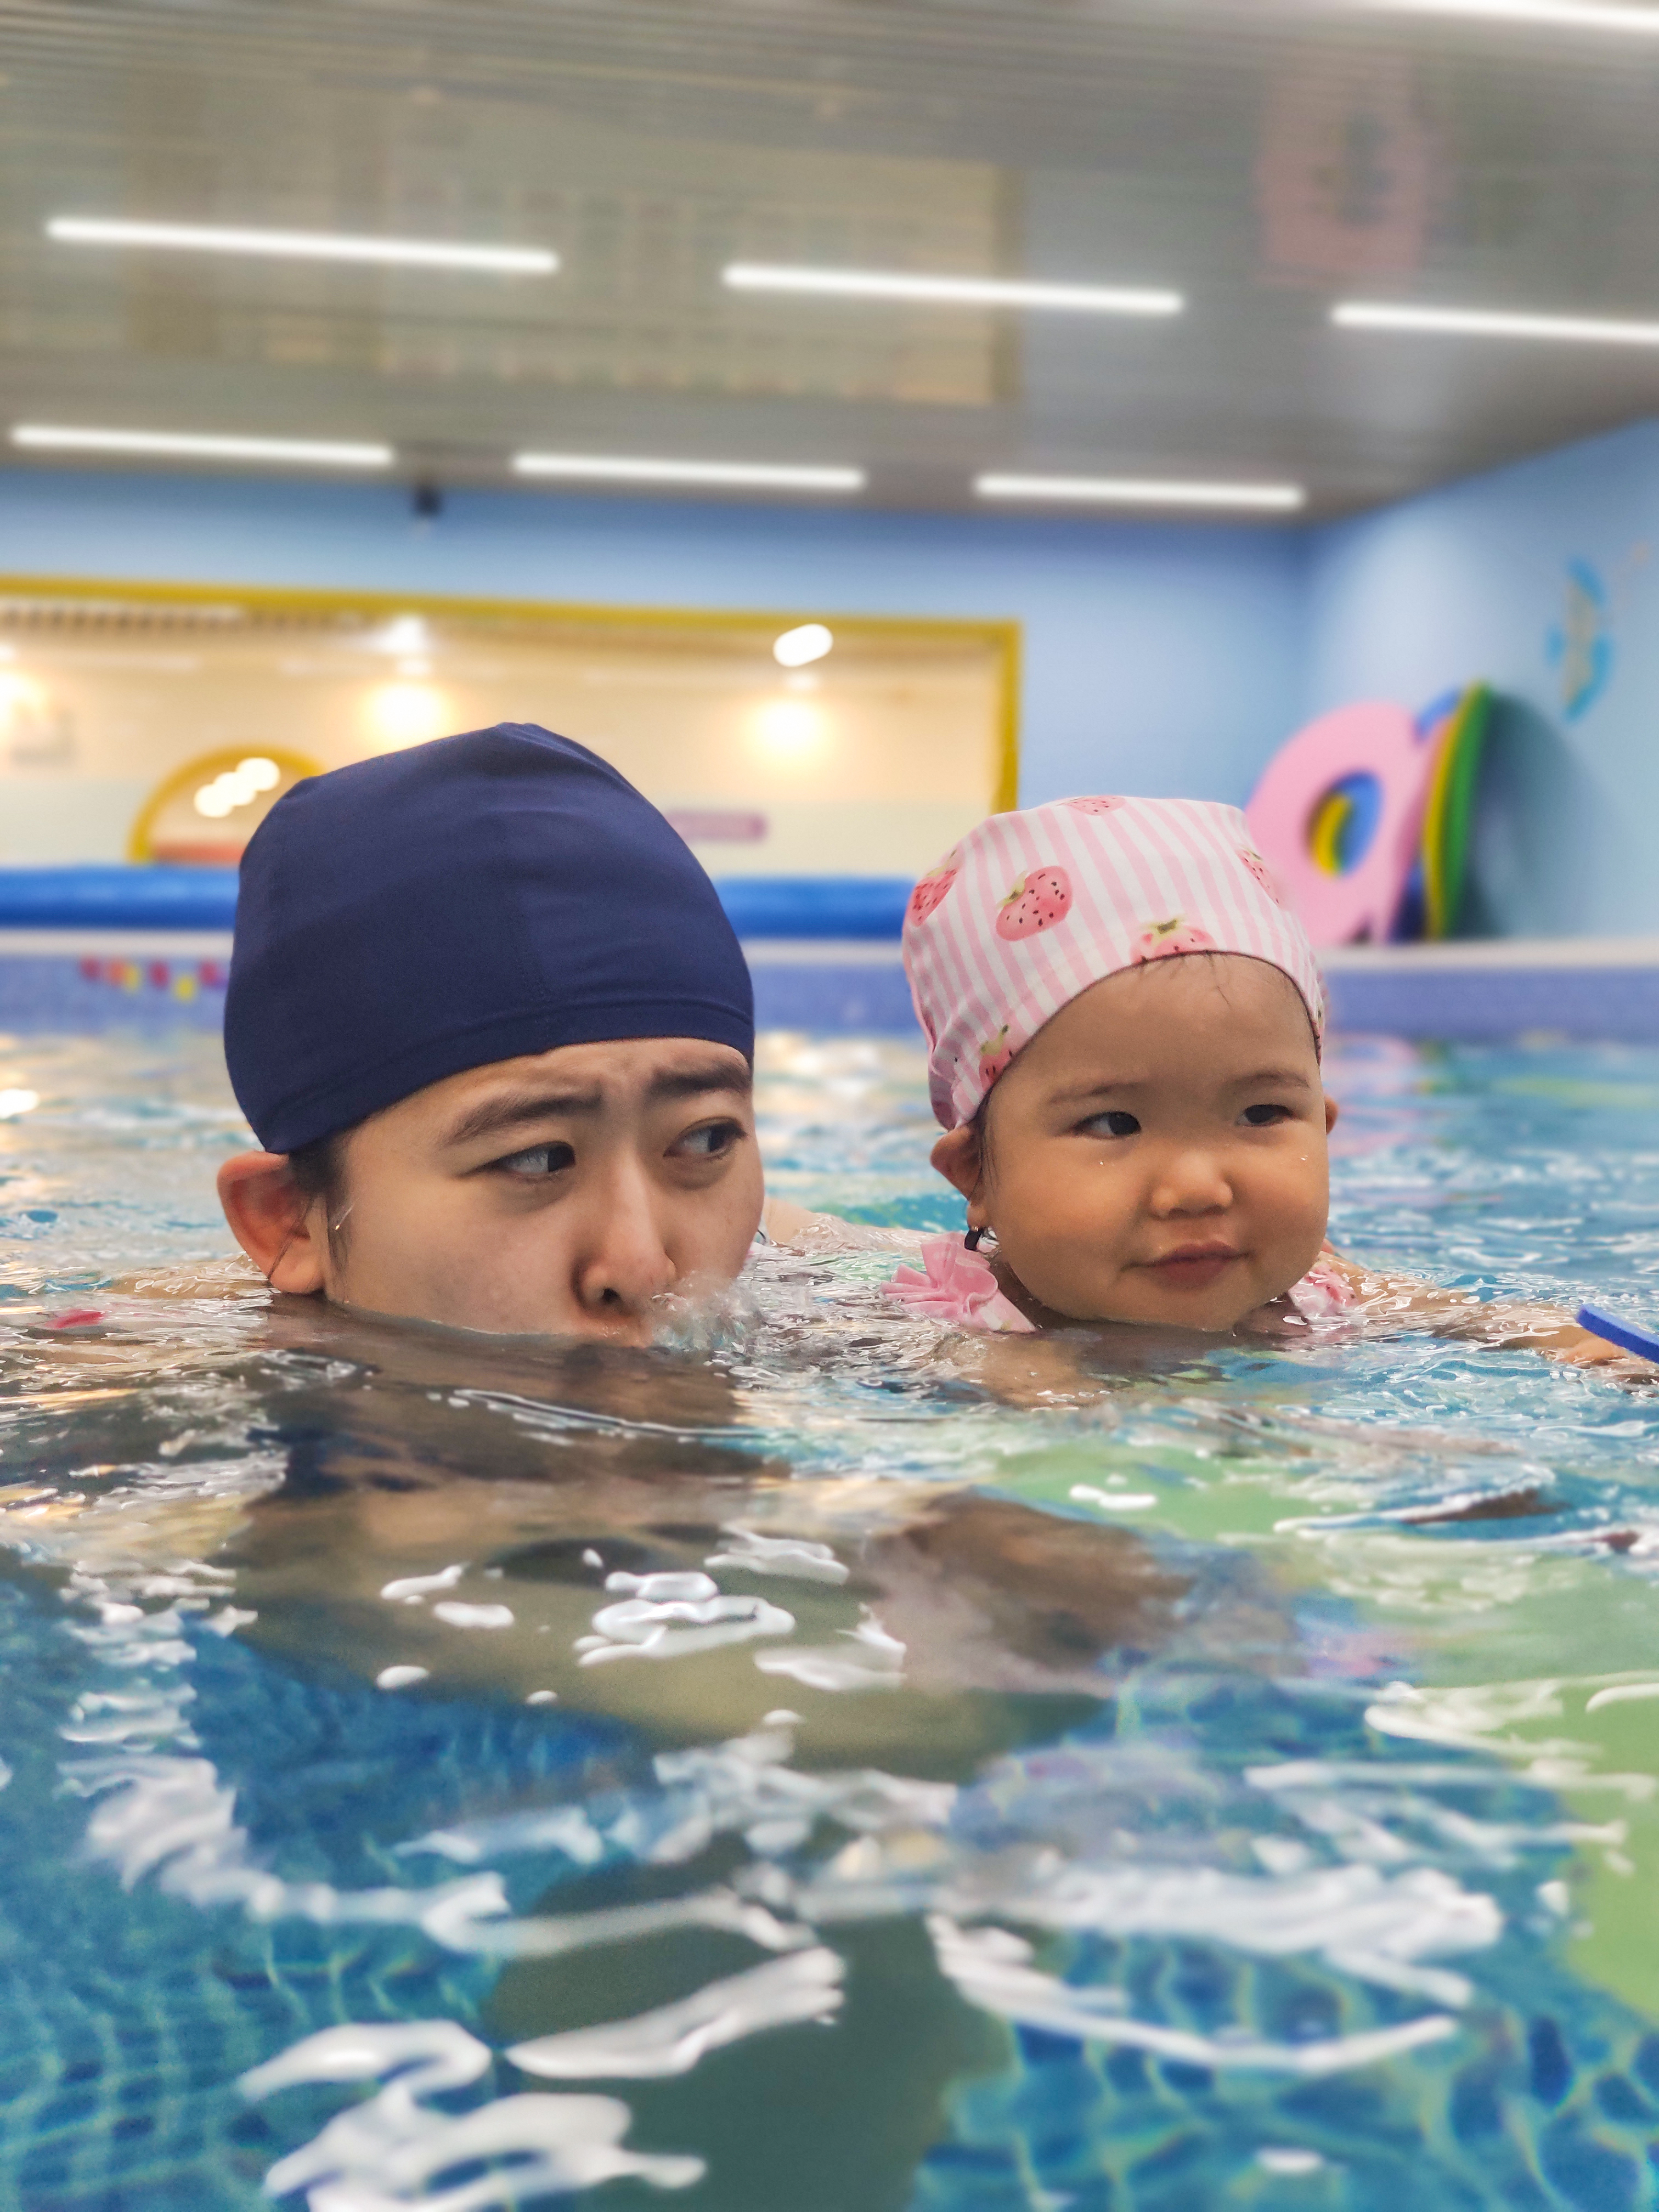 为什么天凉了带宝宝去游泳馆的家长却增多了